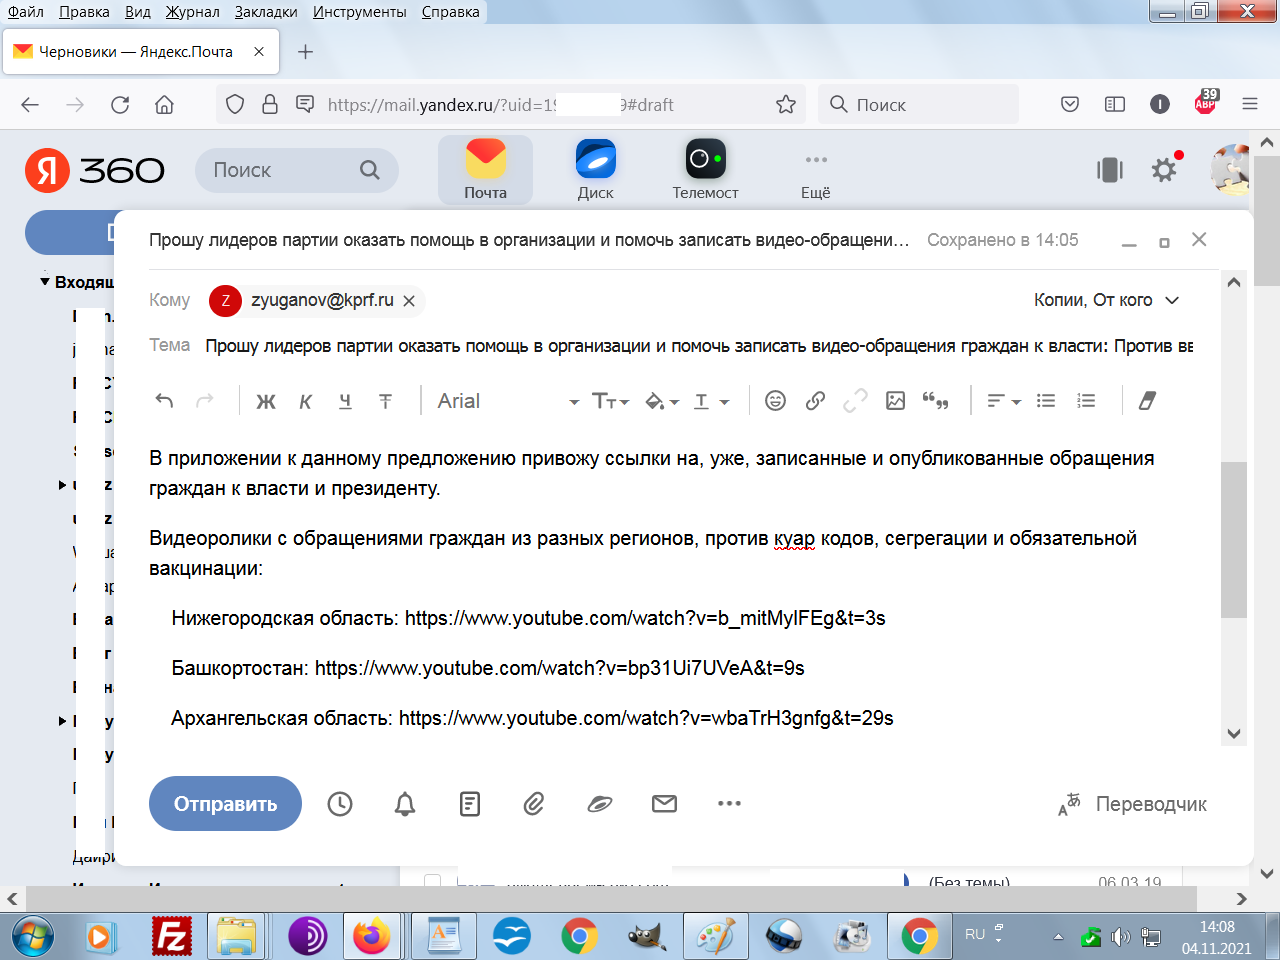 Моё письмо к Зюганову с предложением записать видеообращение граждан против куар кодов, сегрегации и обязательной вакцинации